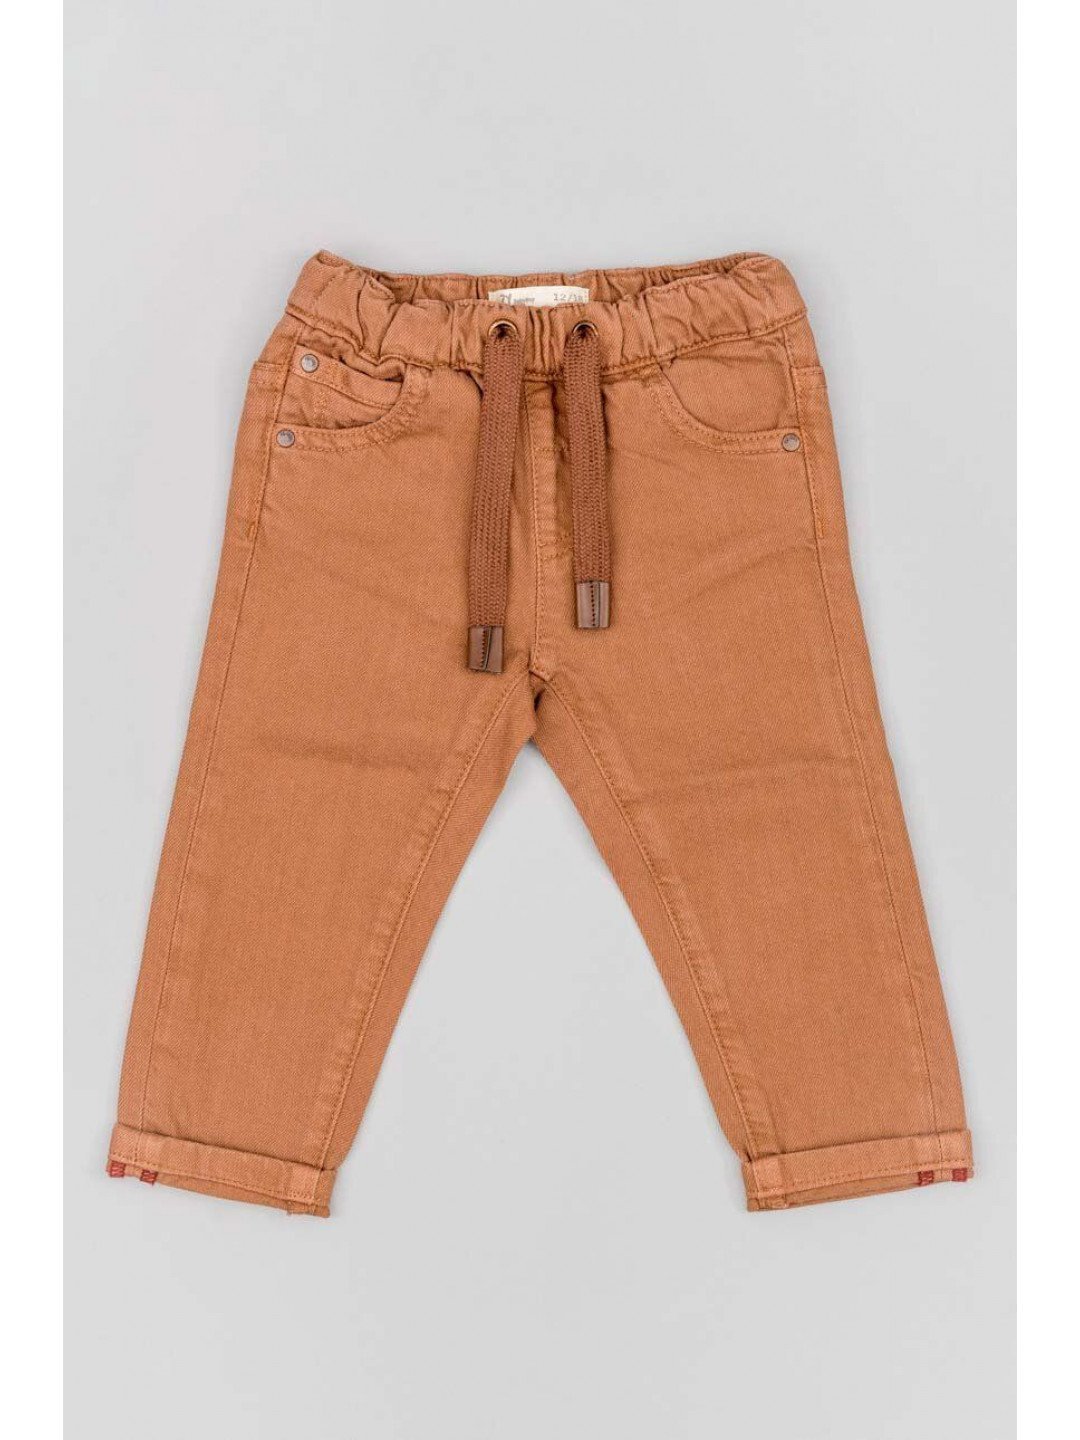 Kojenecké kalhoty zippy hnědá barva hladké